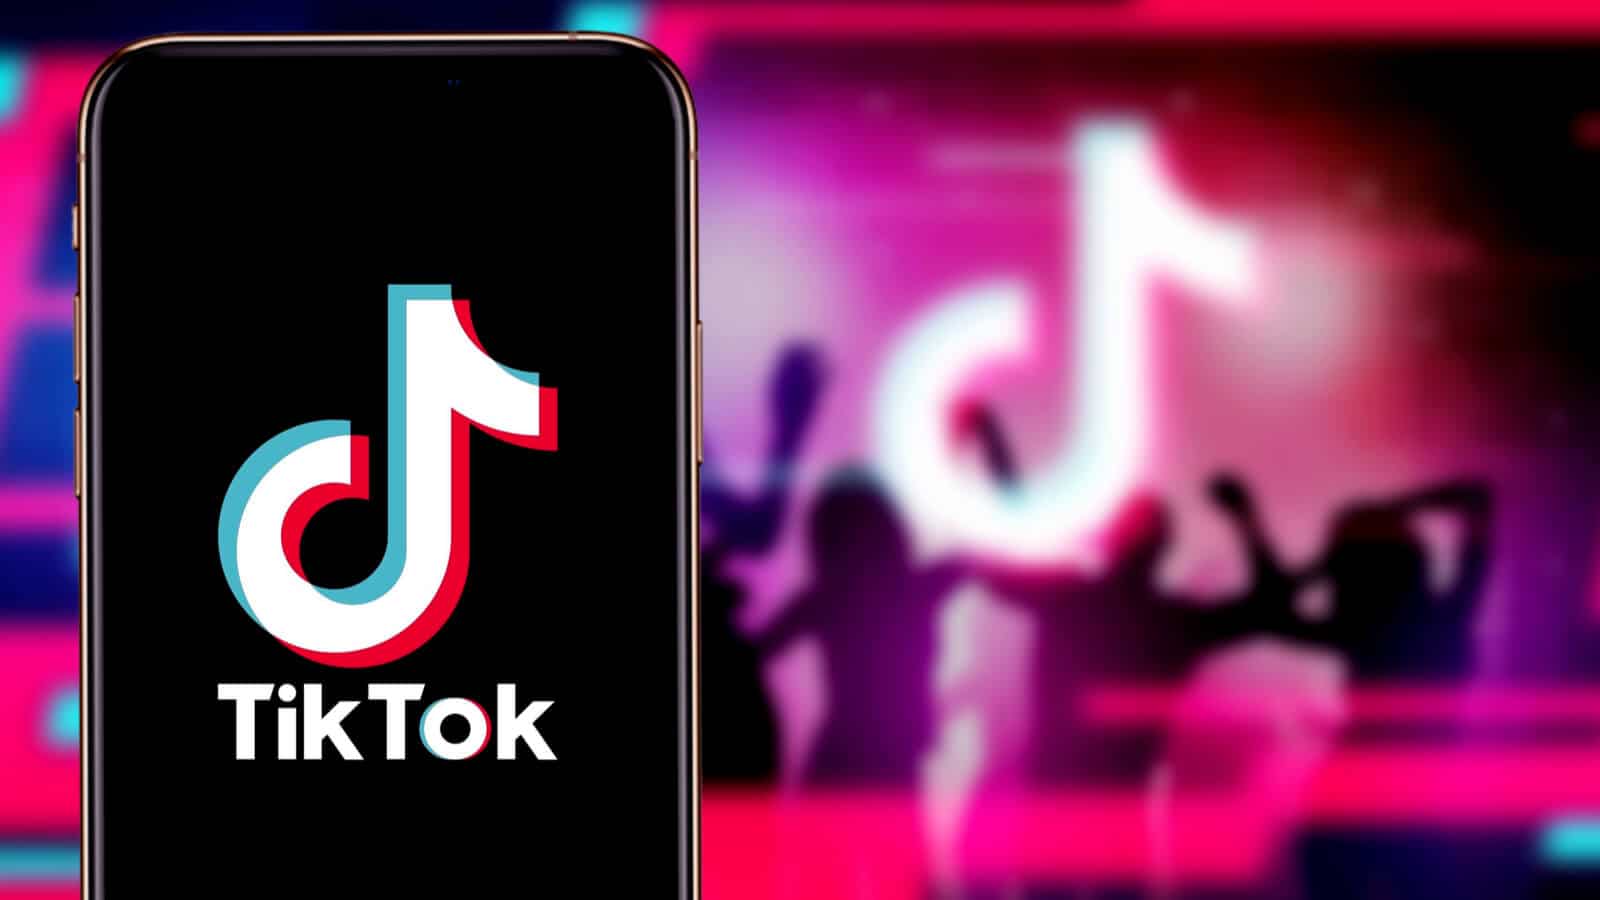 TikTok veröffentlicht beliebteste Clips und Videos des Jahres 2020